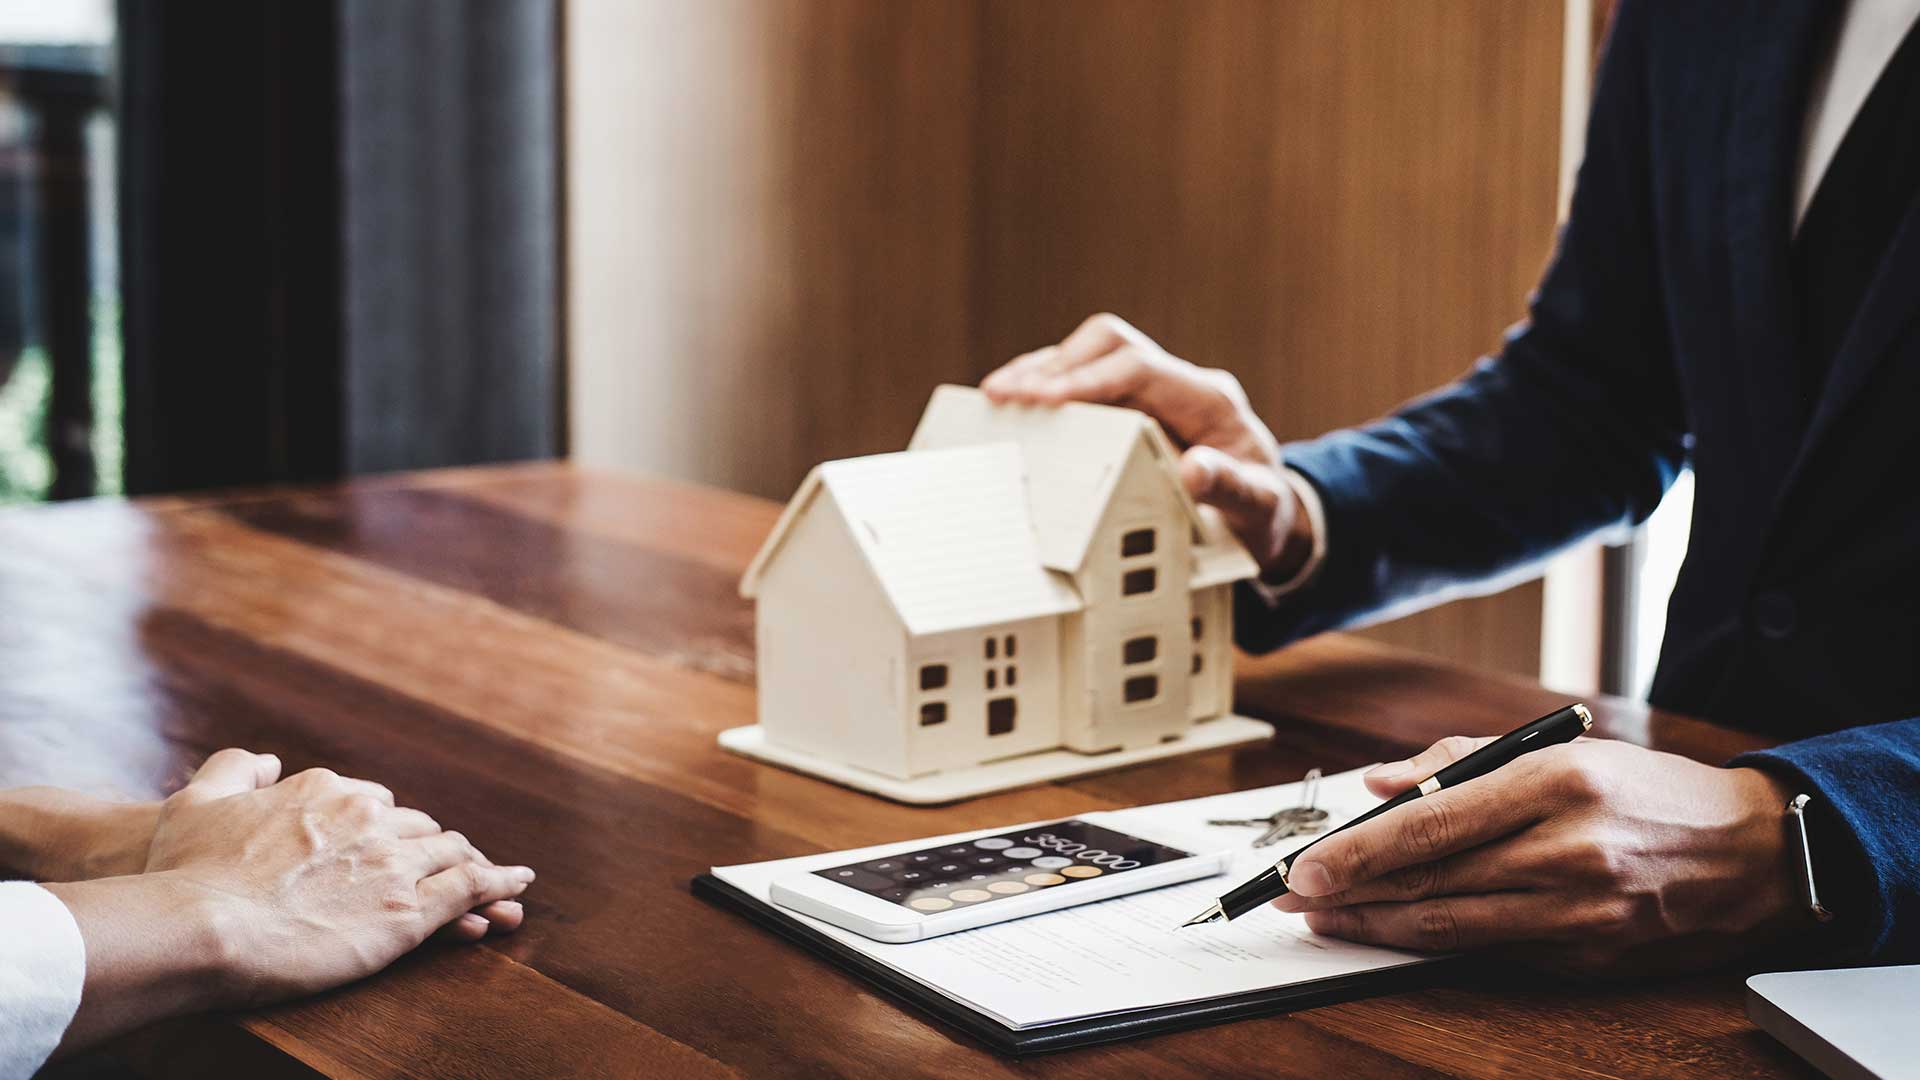 doradca kredytowy wyjaśnia klientowi warunki kredytu hipotecznego trzymając w jednej ręce długopis a w drugiej mały domek -  w 2022